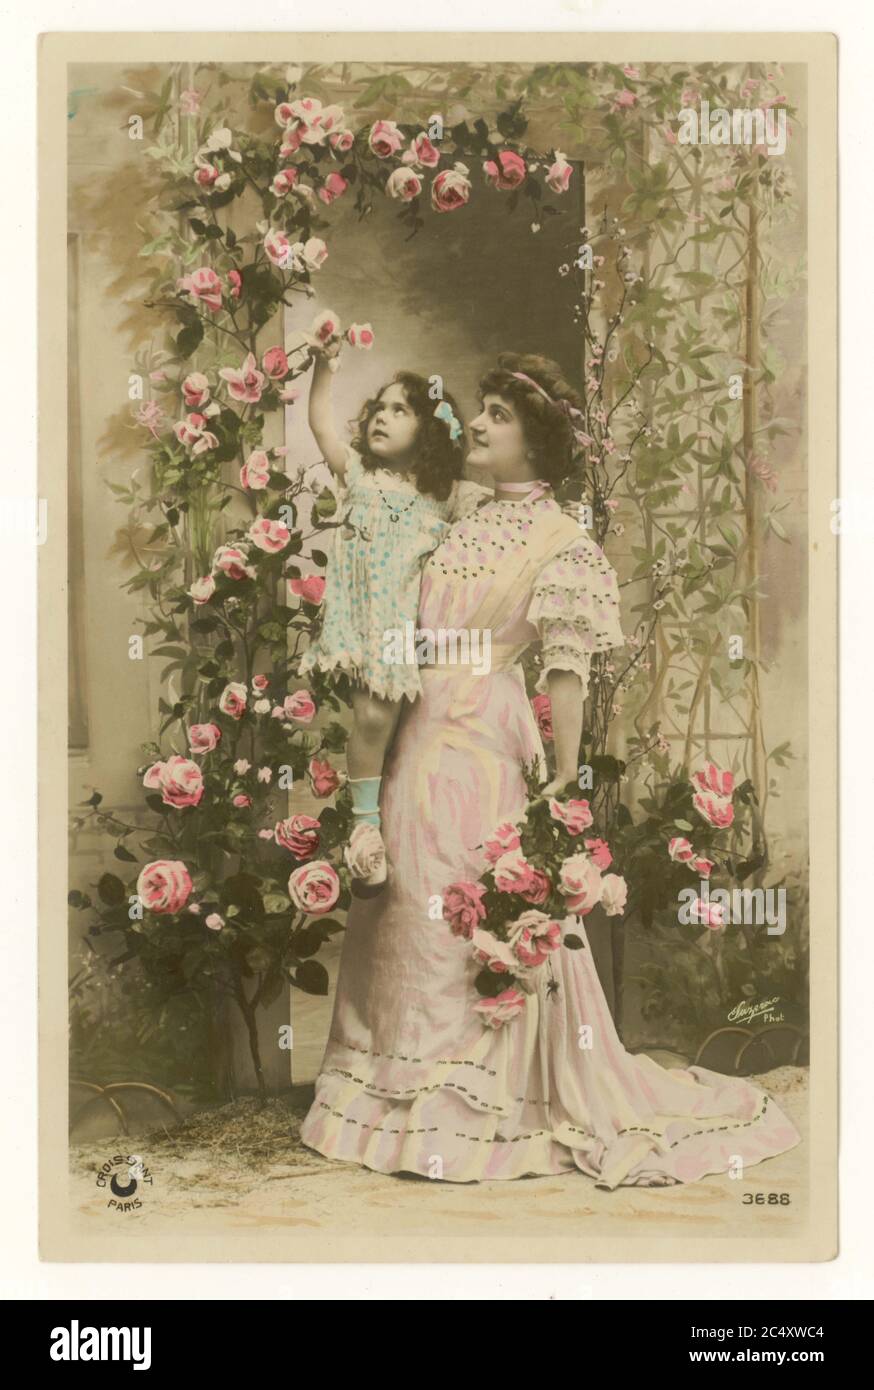 Anfang des 20. Jahrhunderts Französisch sentimental getönte Grußkarte - Mutter und süße Tochter - die Mutter hält ihre Tochter bis zu Rosen, Frankreich, um 1912 Stockfoto